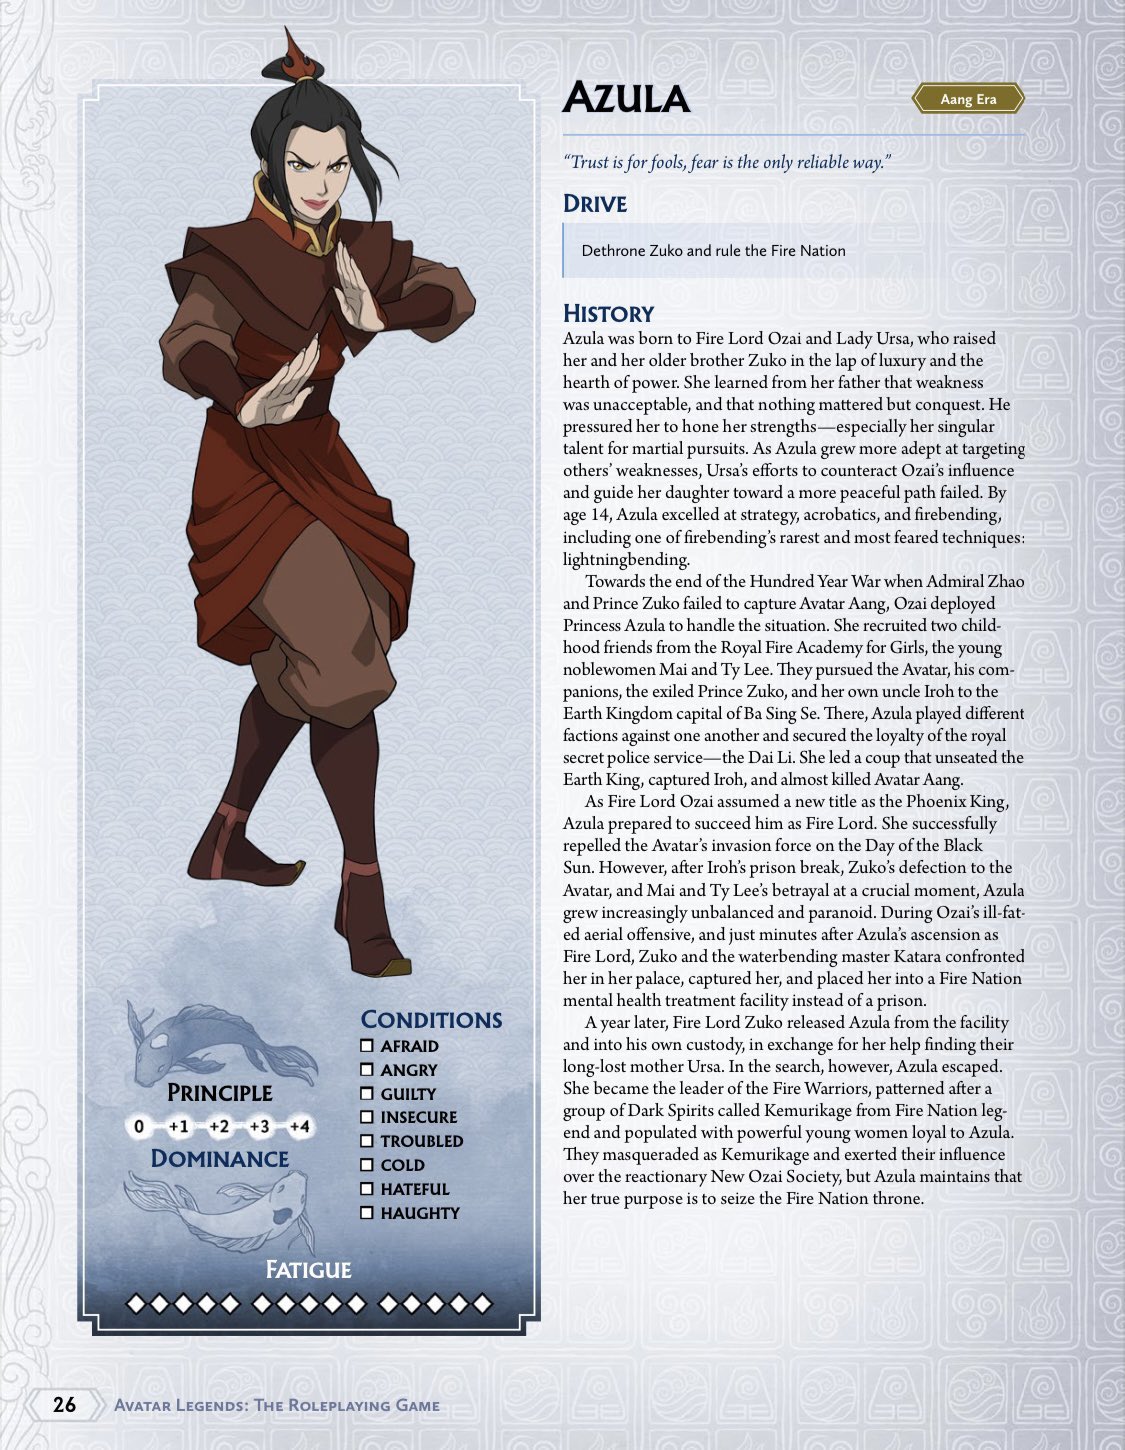 Azula, cô công chúa tàn nhẫn trong Avatar Legends, đã trở lại! Hãy xem những hình ảnh mới nhất của cô trong trò chơi và khám phá trải nghiệm mới mẻ và đầy thú vị cùng với Avatar Legends. Trò chơi này đem đến cho người chơi những cung bậc cảm xúc khác nhau và Azula là một trong những nhân vật đáng chú ý nhất.